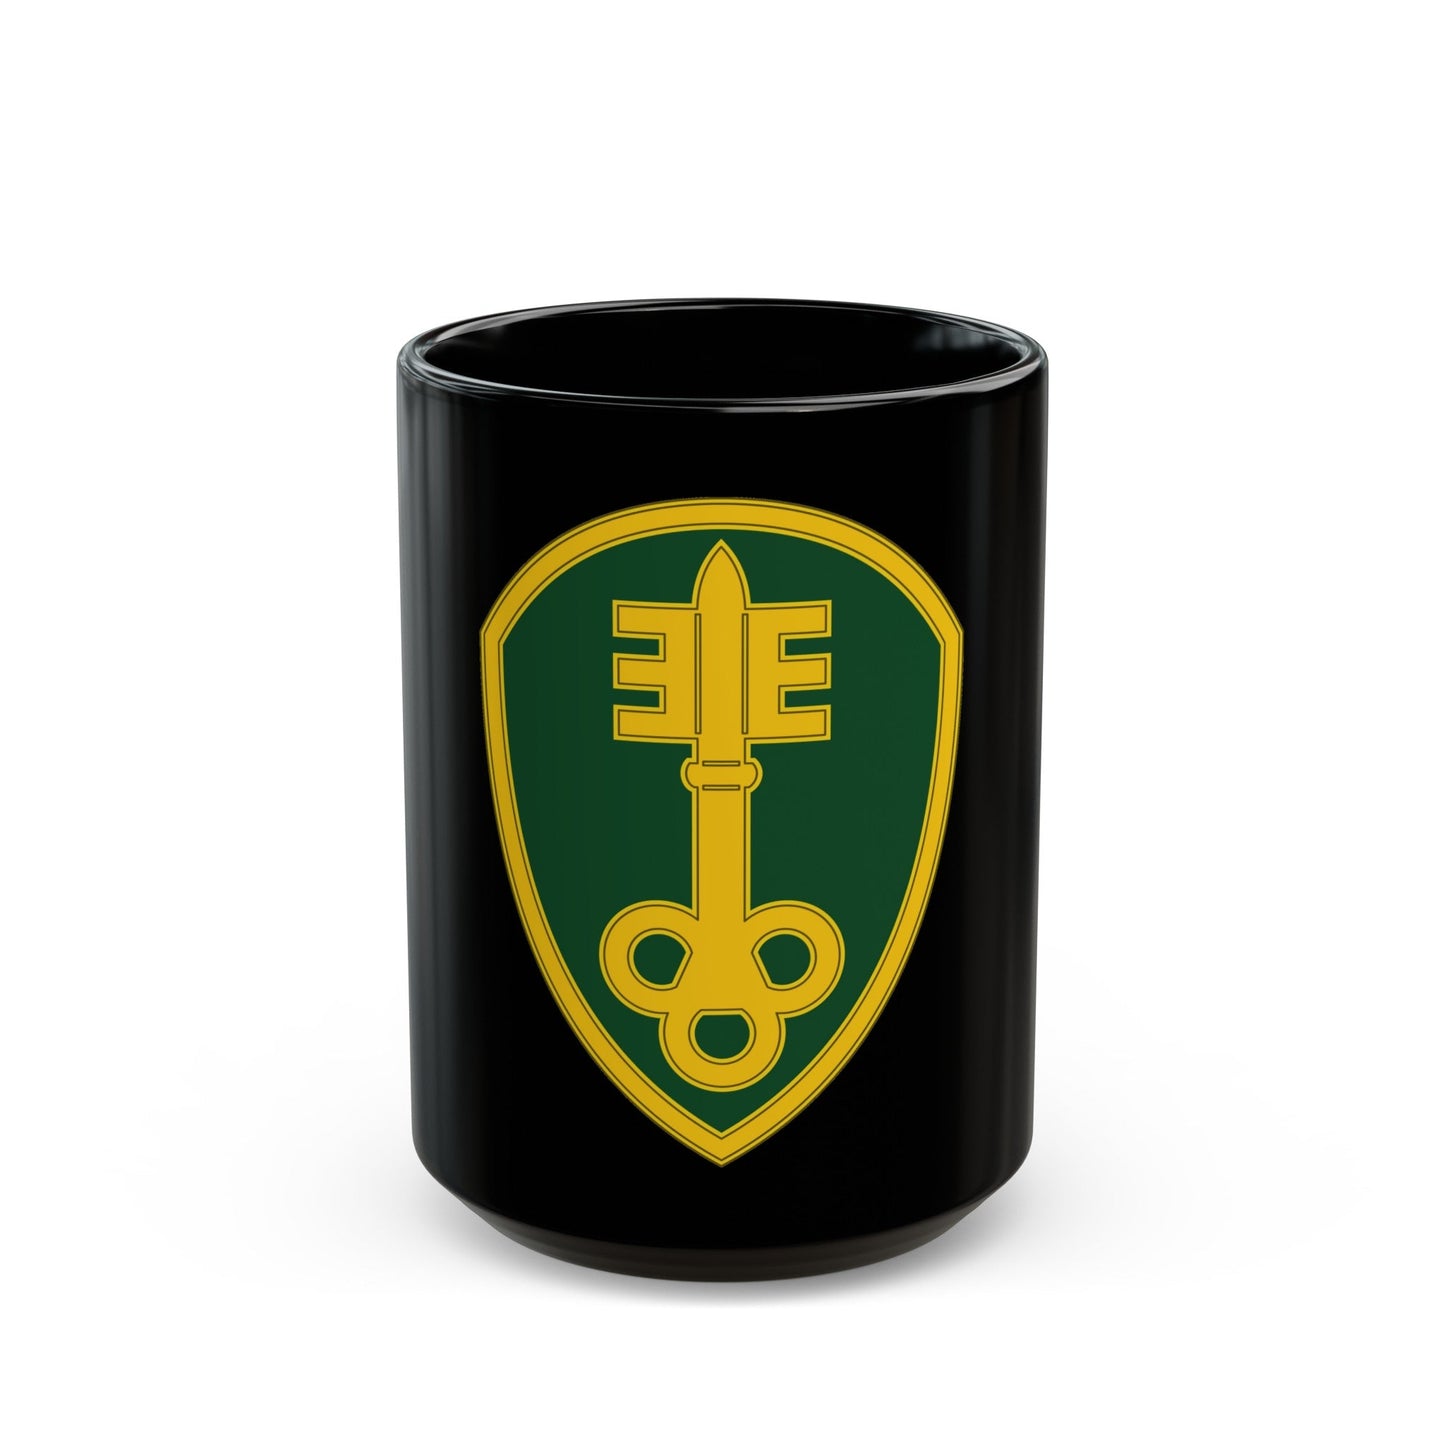 300 Military Police Brigade 3 (U.S. Army) Black Coffee Mug-15oz-The Sticker Space